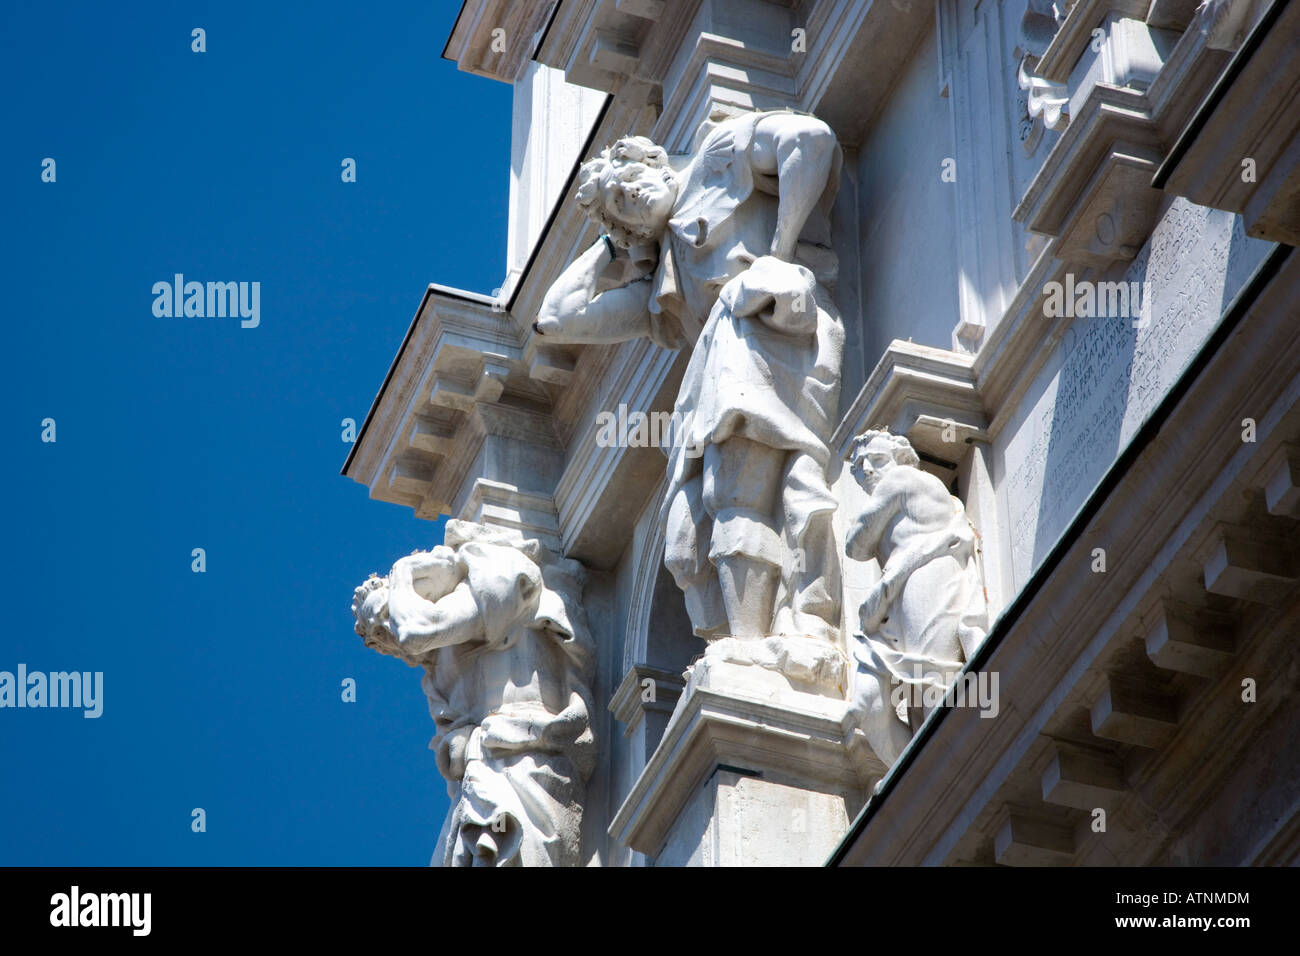 Venise, Vénétie, Italie. Les chiffres sur le géant façade baroque de l'Ospedaletto, a.k.a Chiesa di Santa Maria dei Derelitti. Banque D'Images